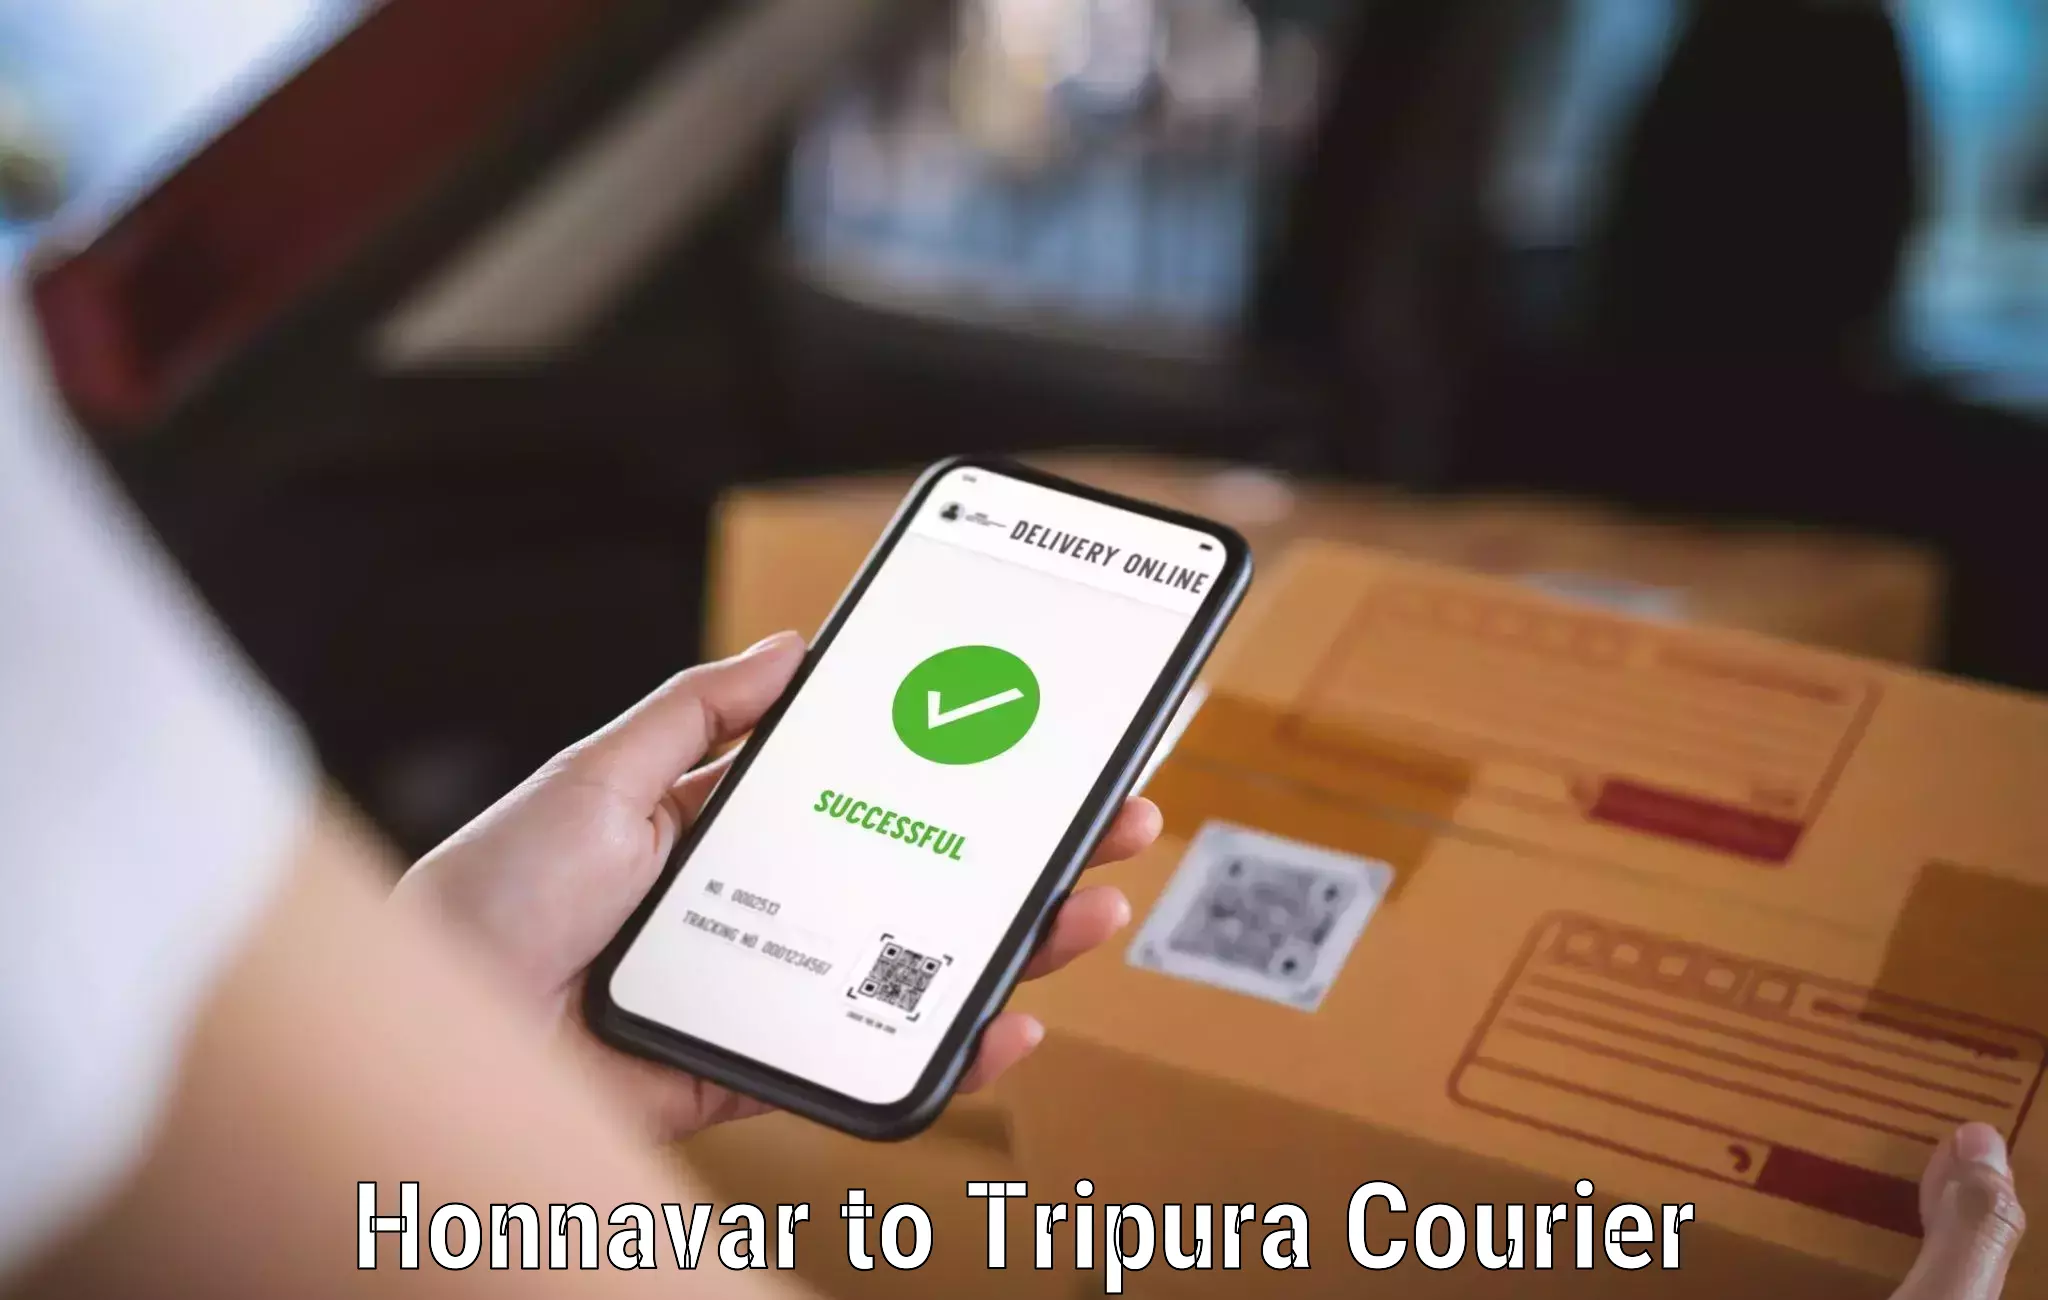 High-capacity parcel service Honnavar to North Tripura